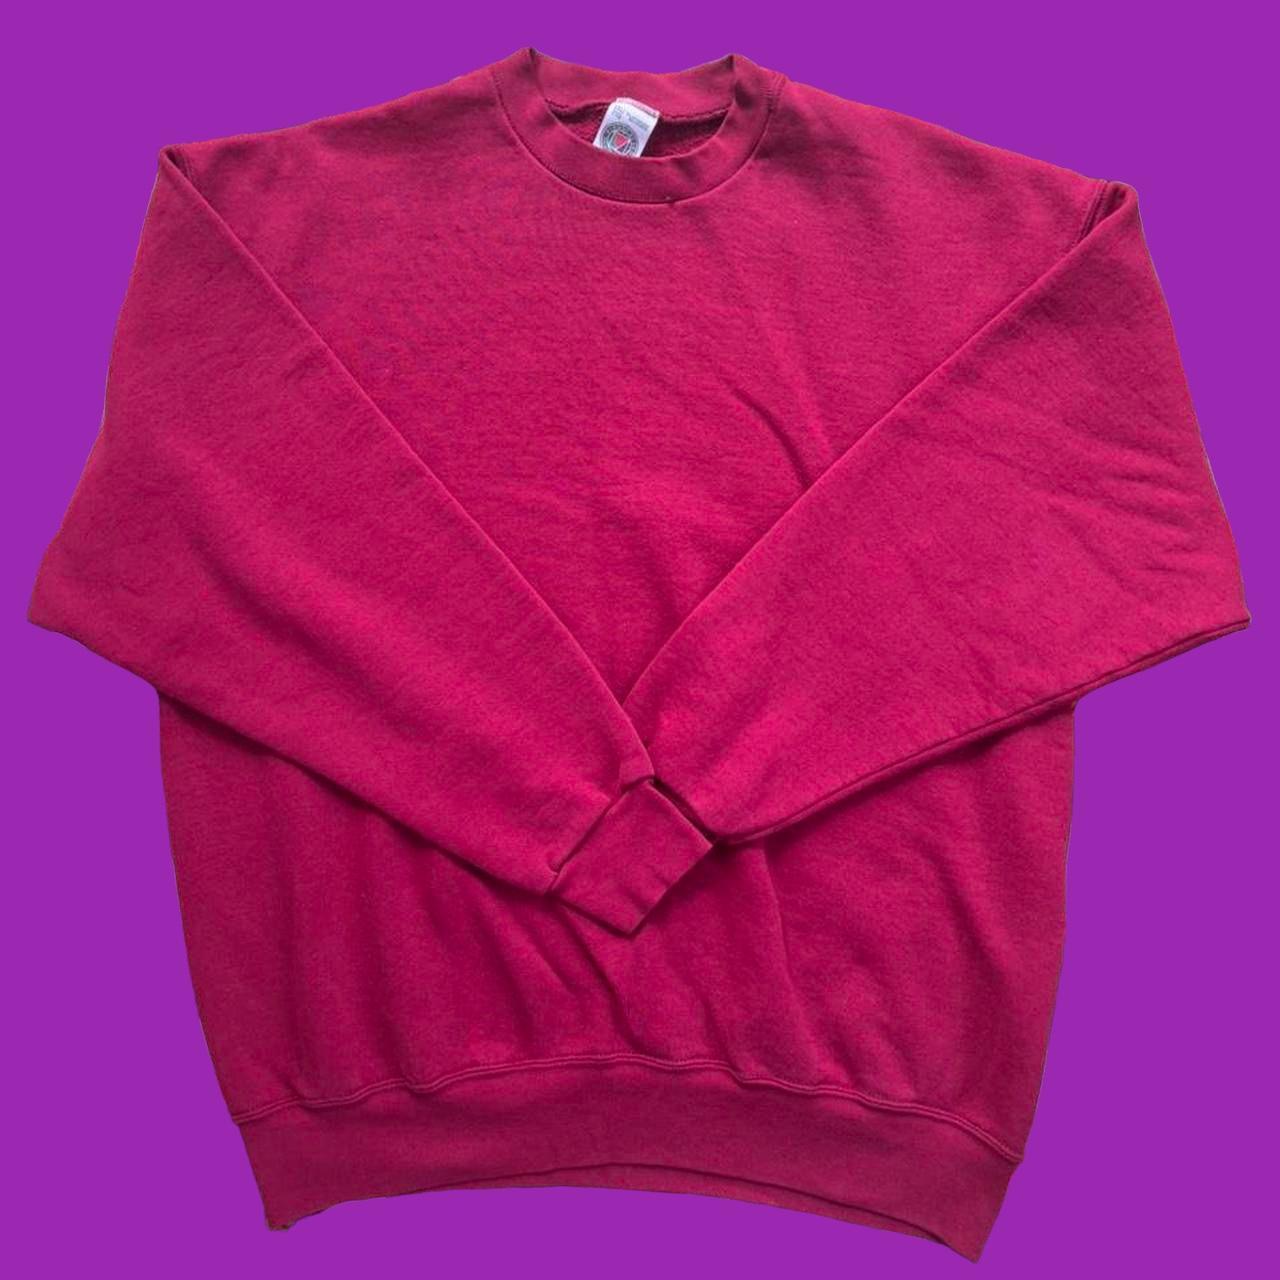 Men's Red Sweatshirt | Depop